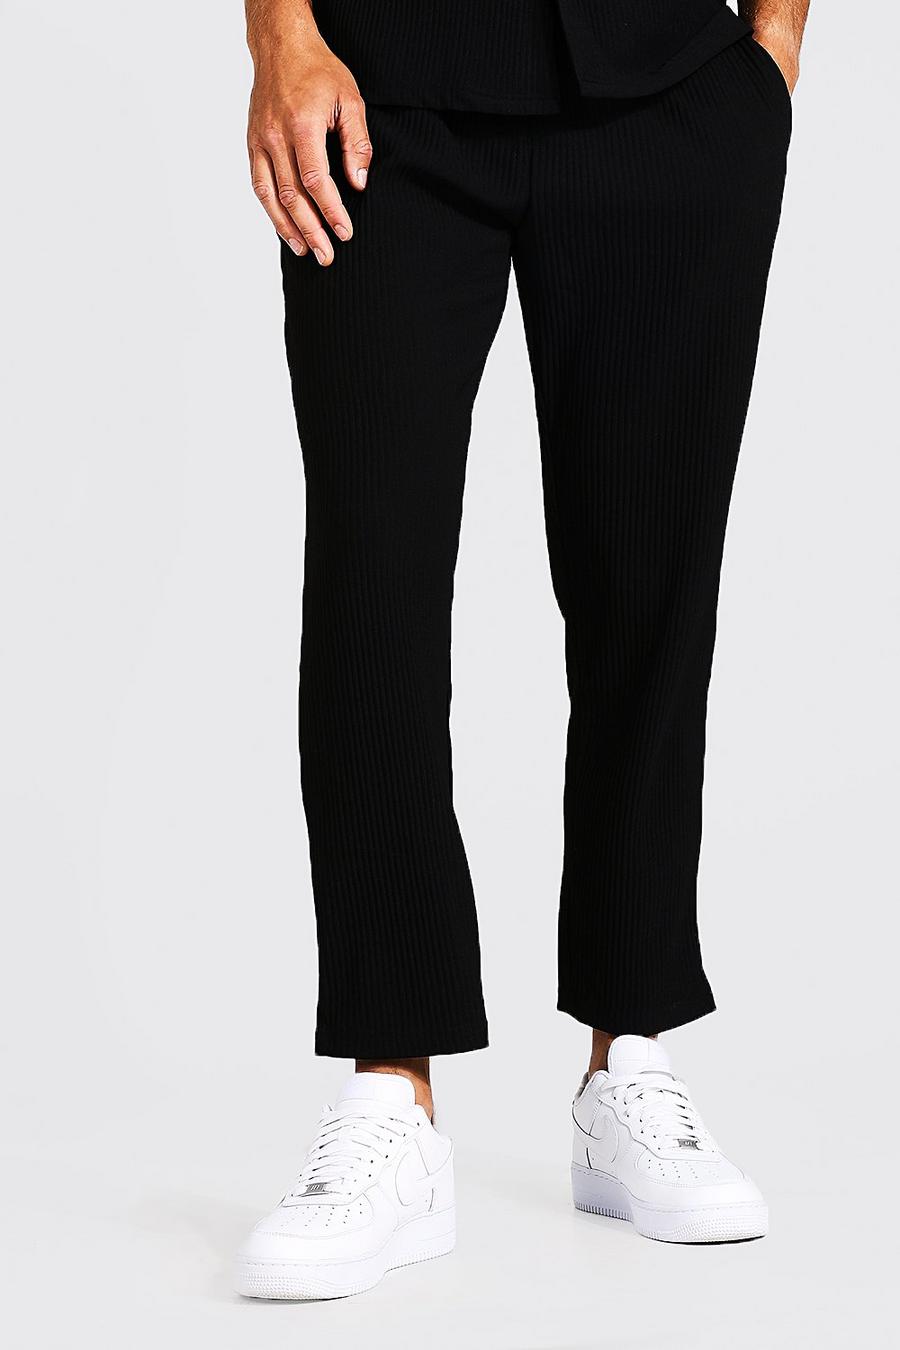 Pantalones Tall ajustados plisados tobilleros, Black negro image number 1